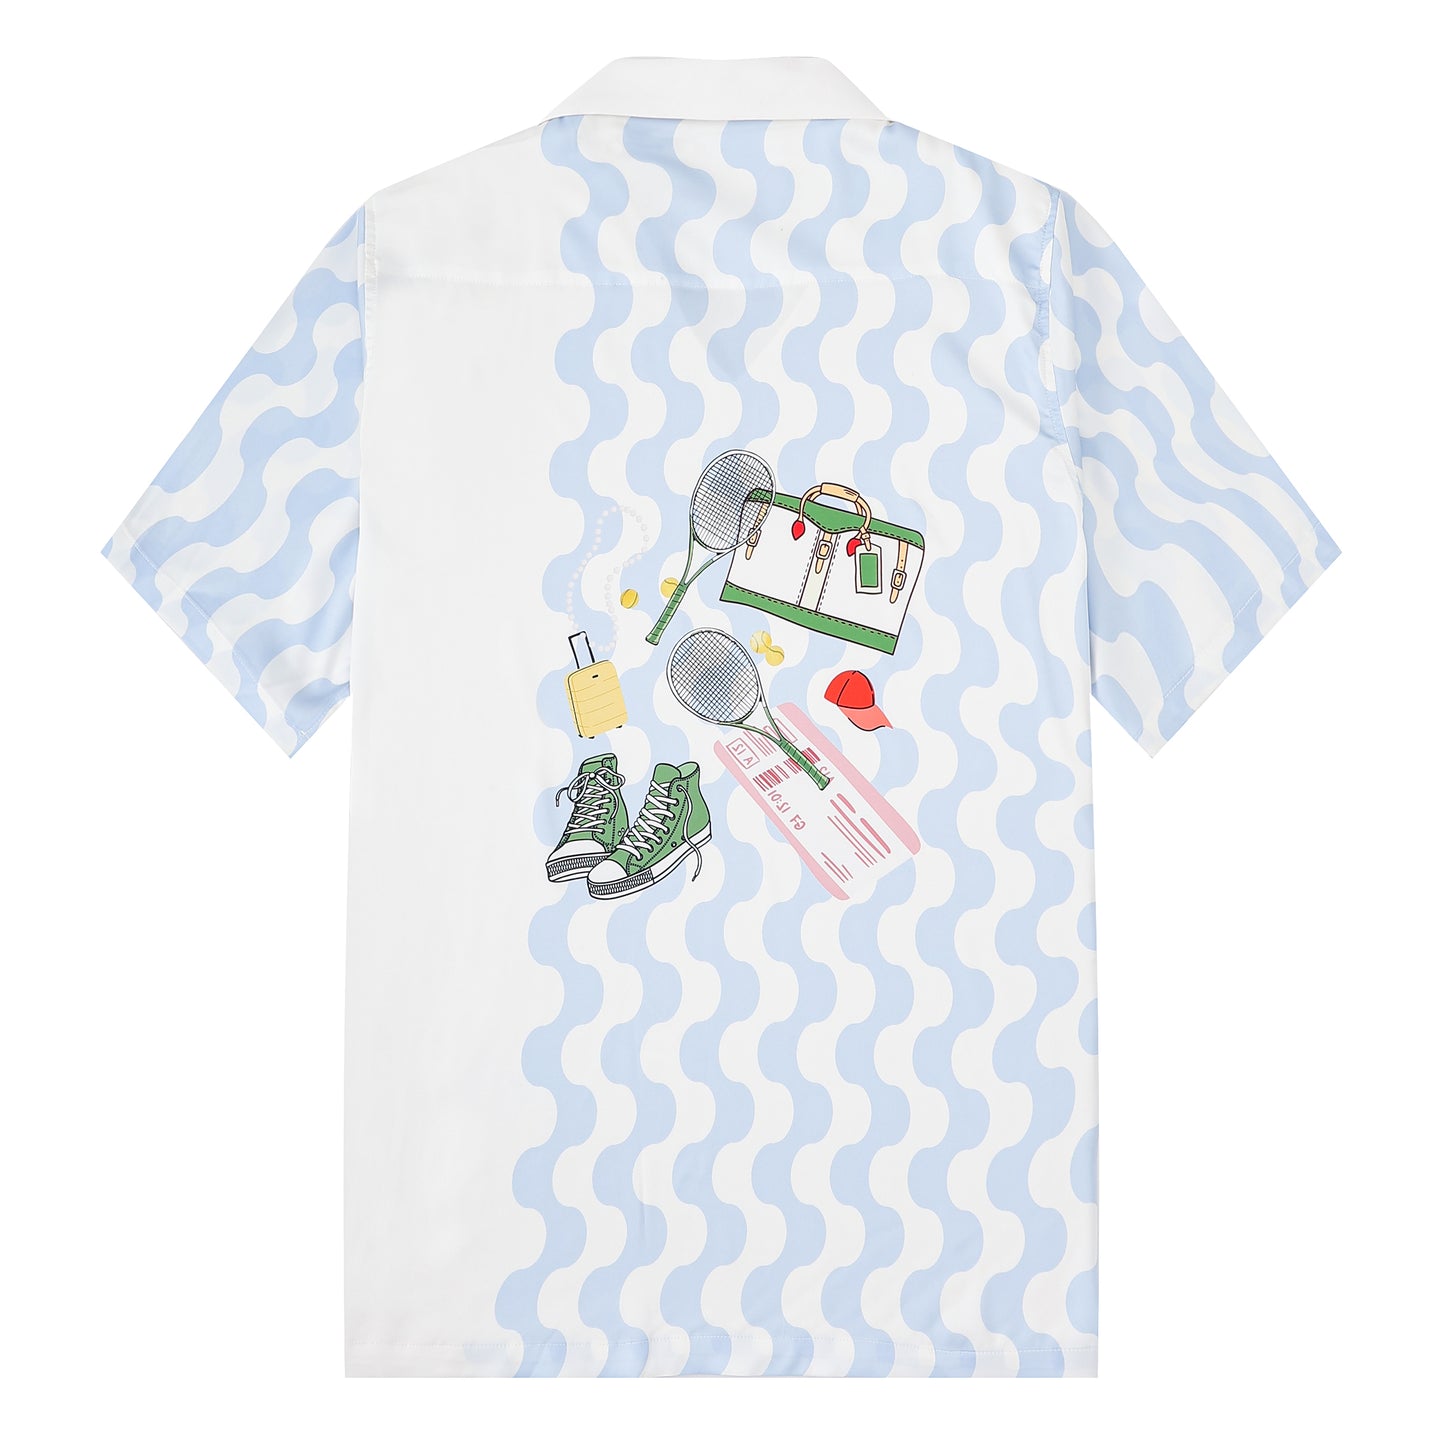 Tennis Element Print Short Sleeve Camp Collar Shirt